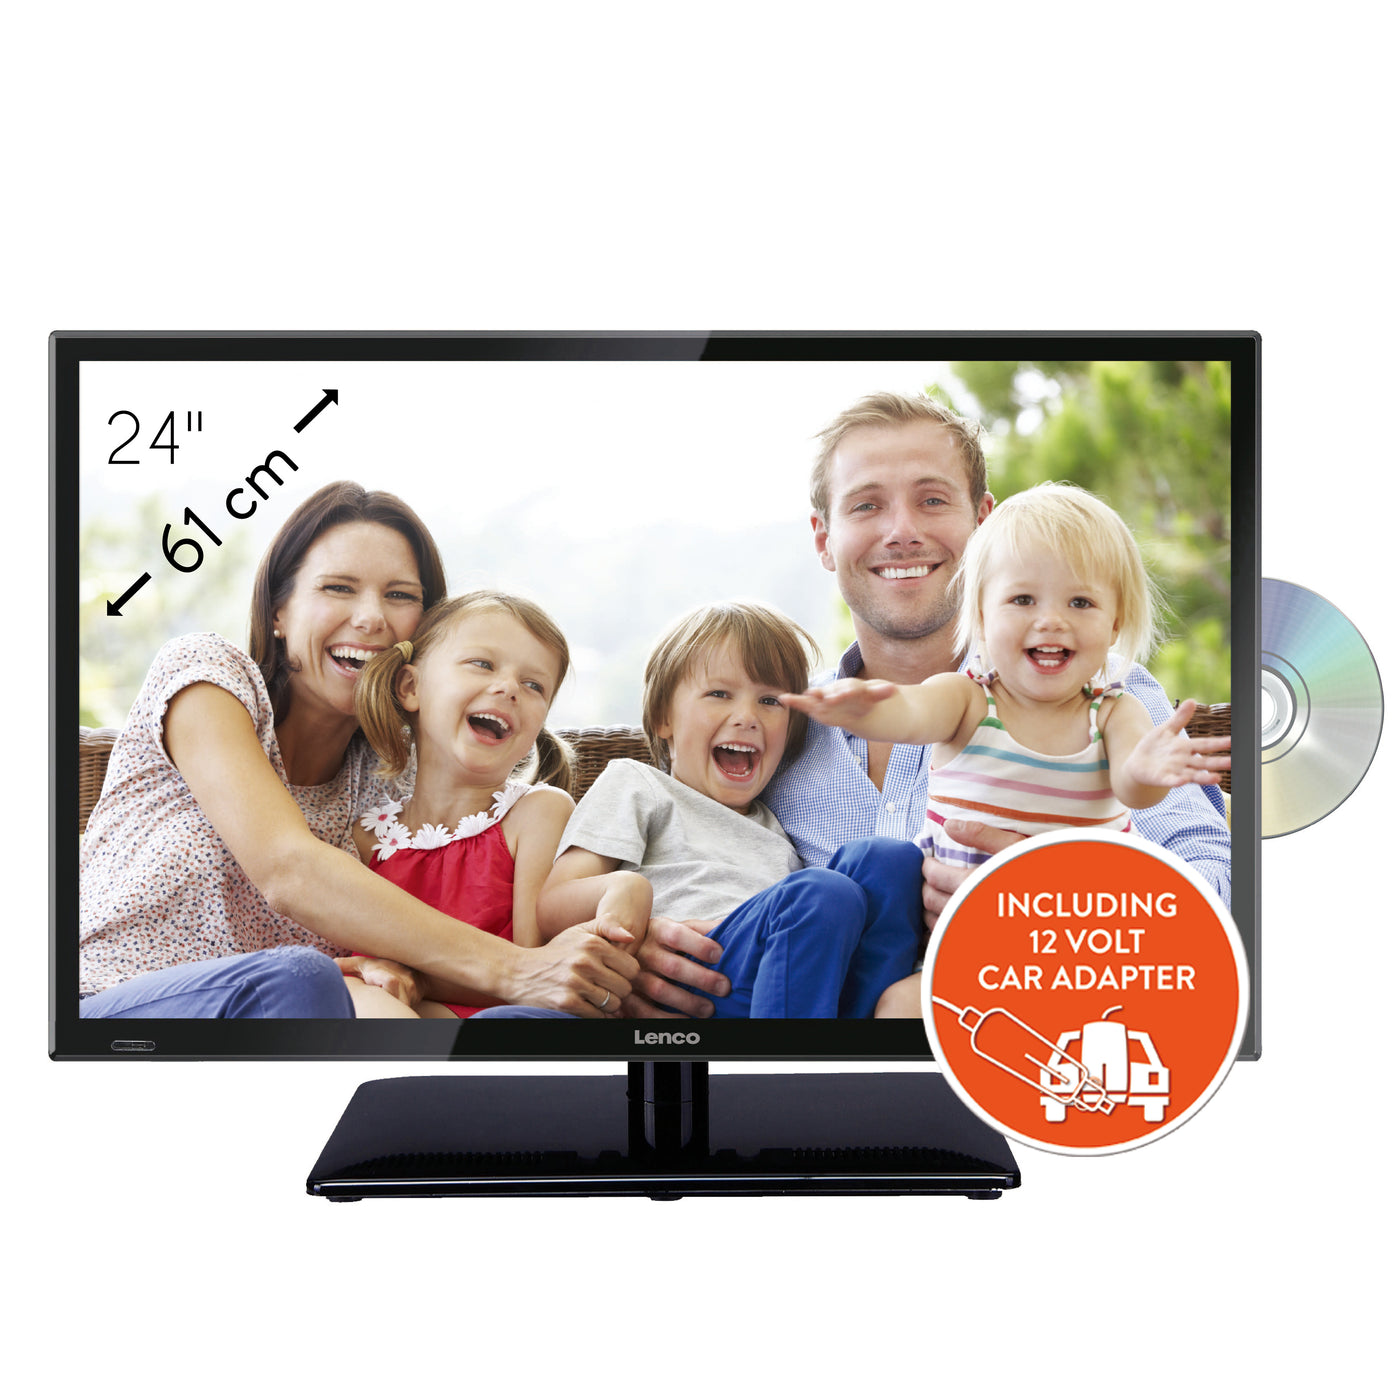 LENCO DVL-240 23,6-calowy telewizor LED Full HD - DVB-t2 - DVD - zasilacz samochodowy - Czarny